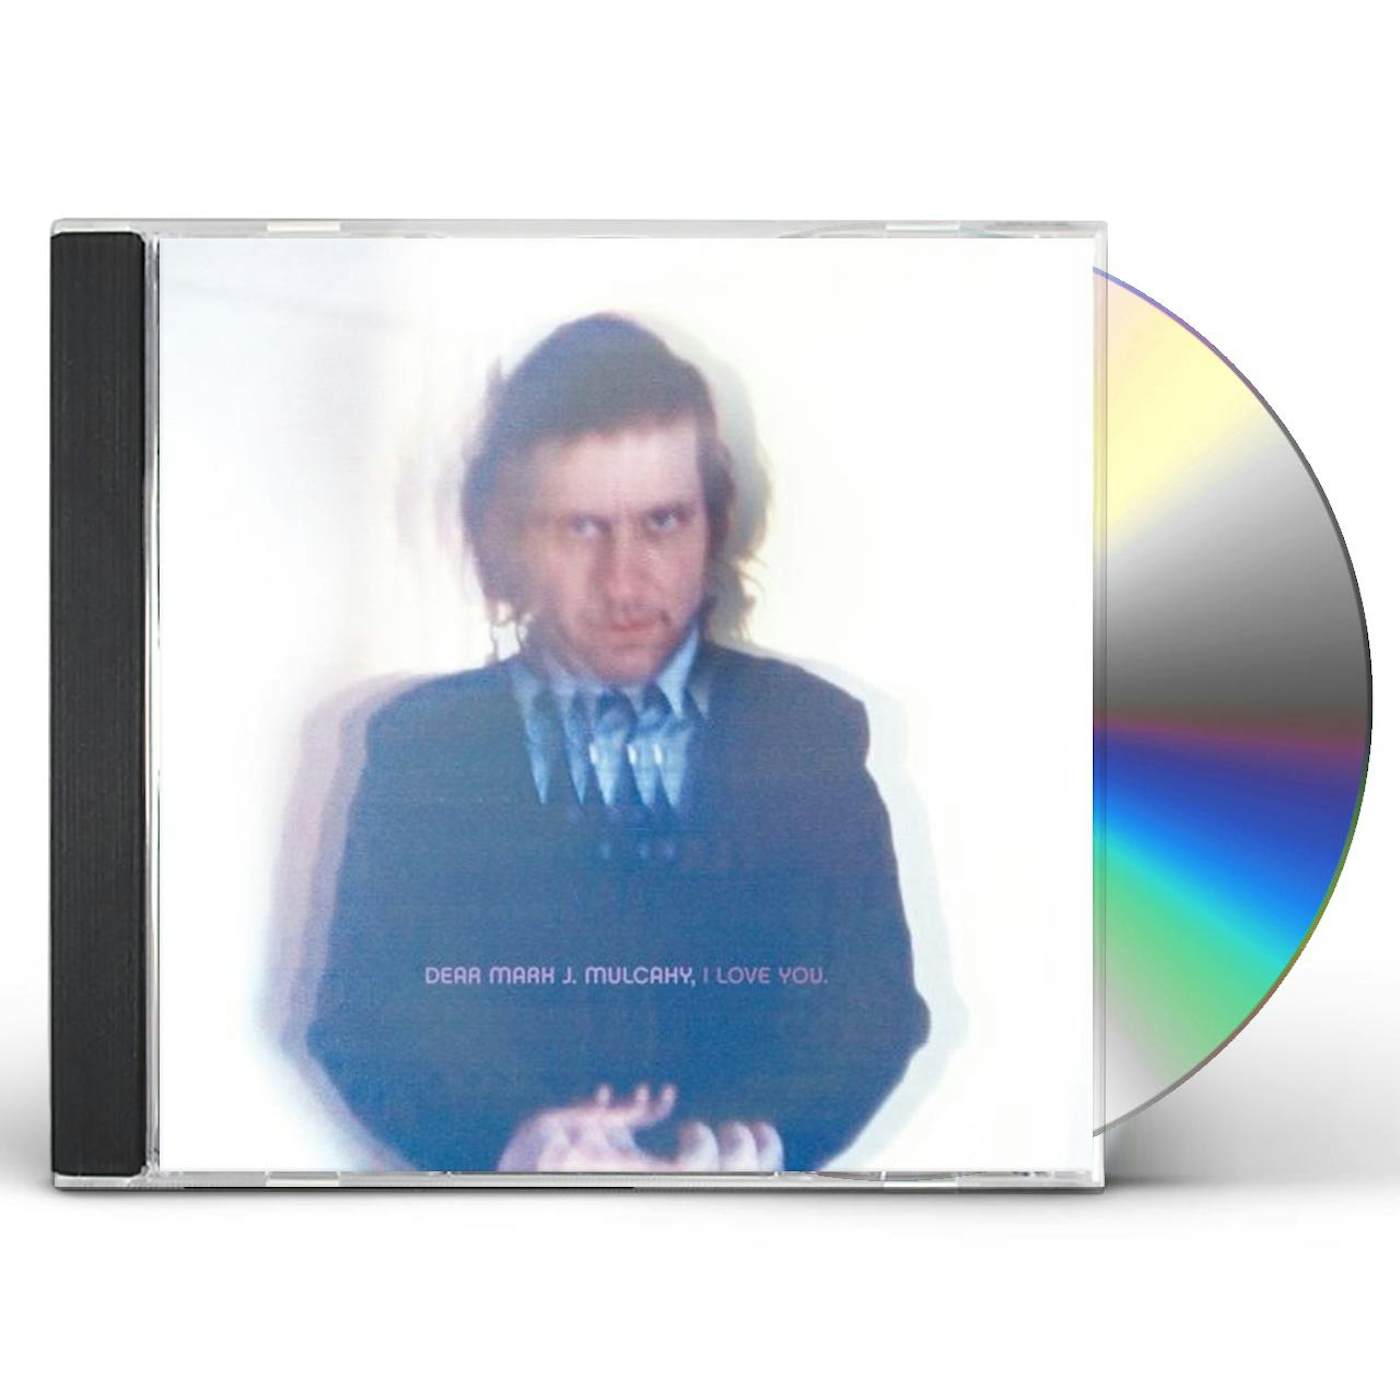 Mark Mulcahy DEAR MARK J. MULCAHY I LOVE YOU CD